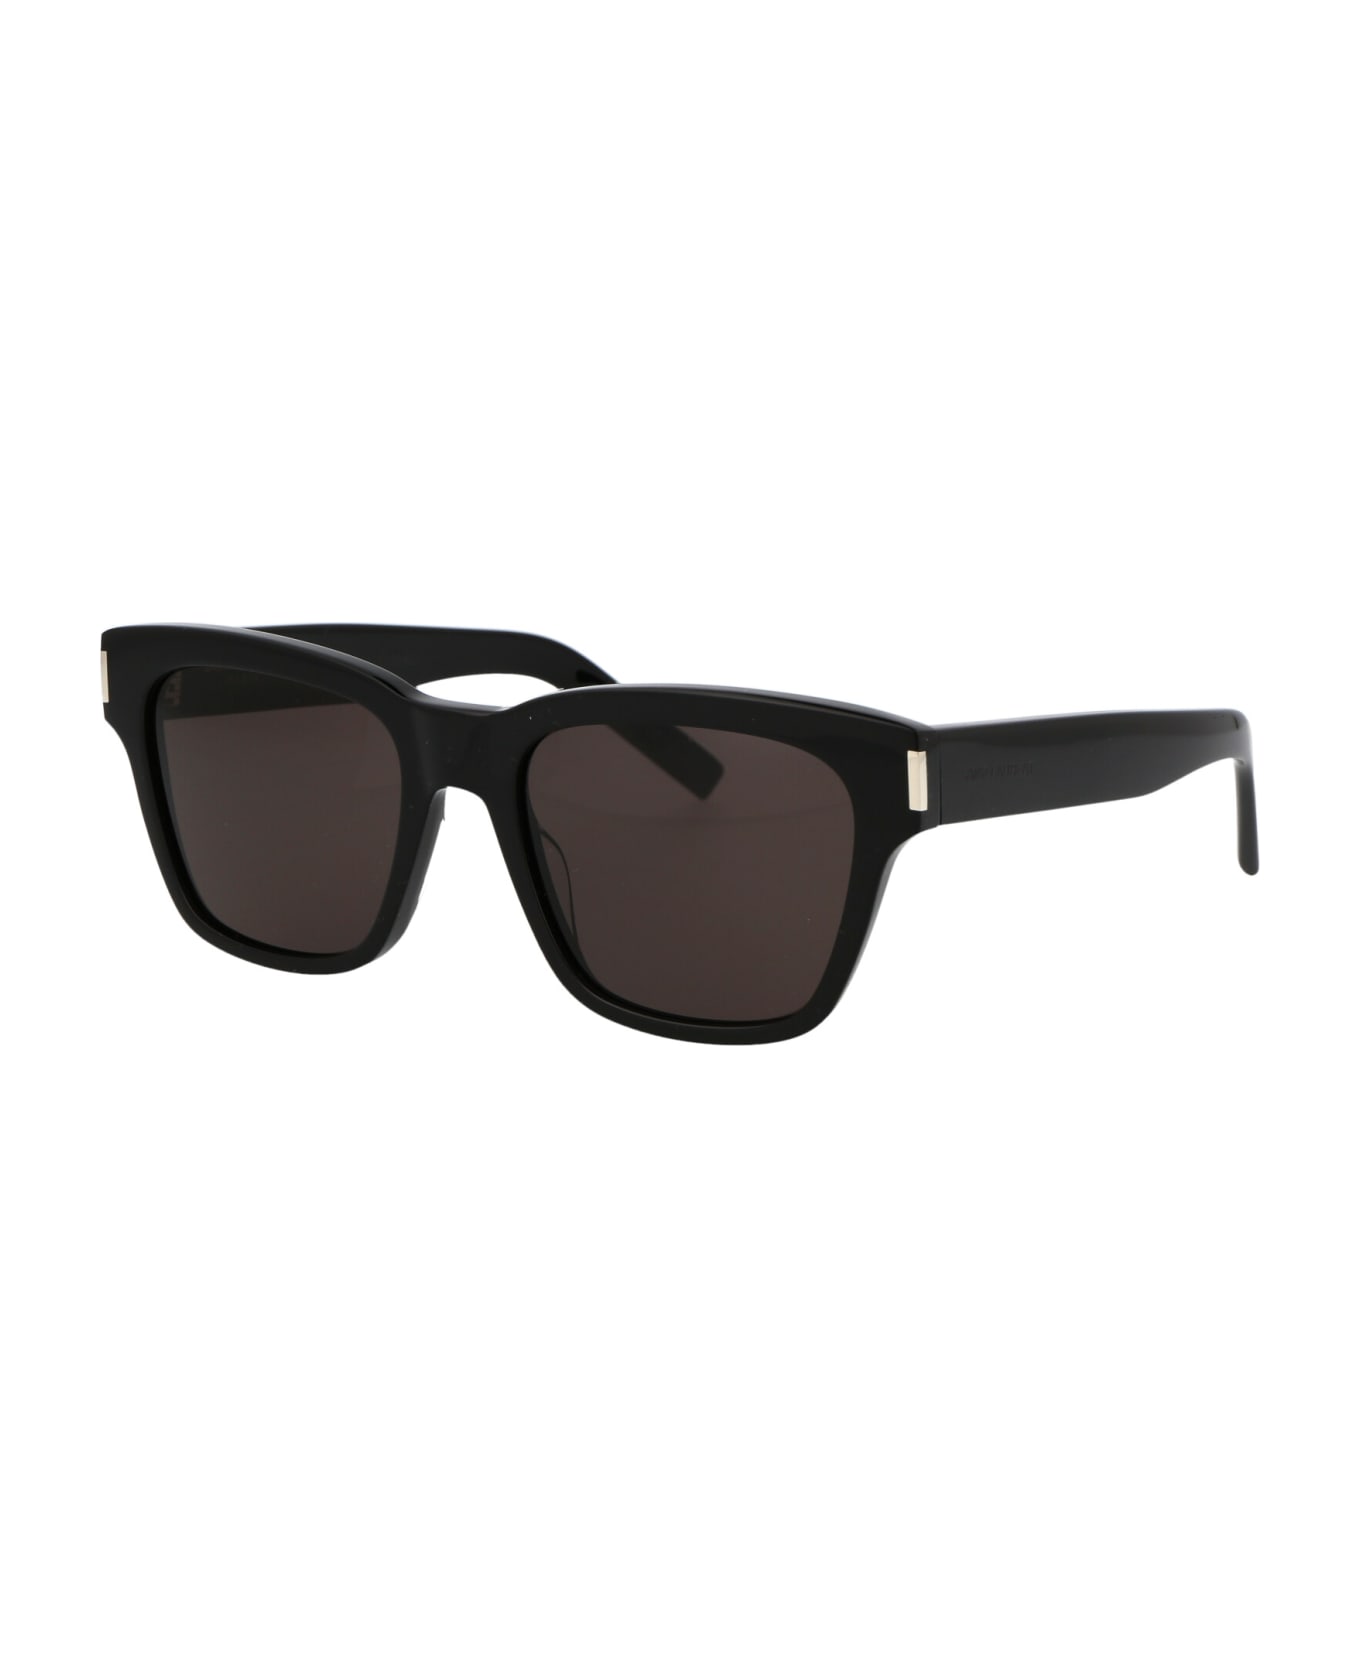 Saint Laurent Eyewear Sl 560 Sunglasses - 001 BLACK BLACK BLACK